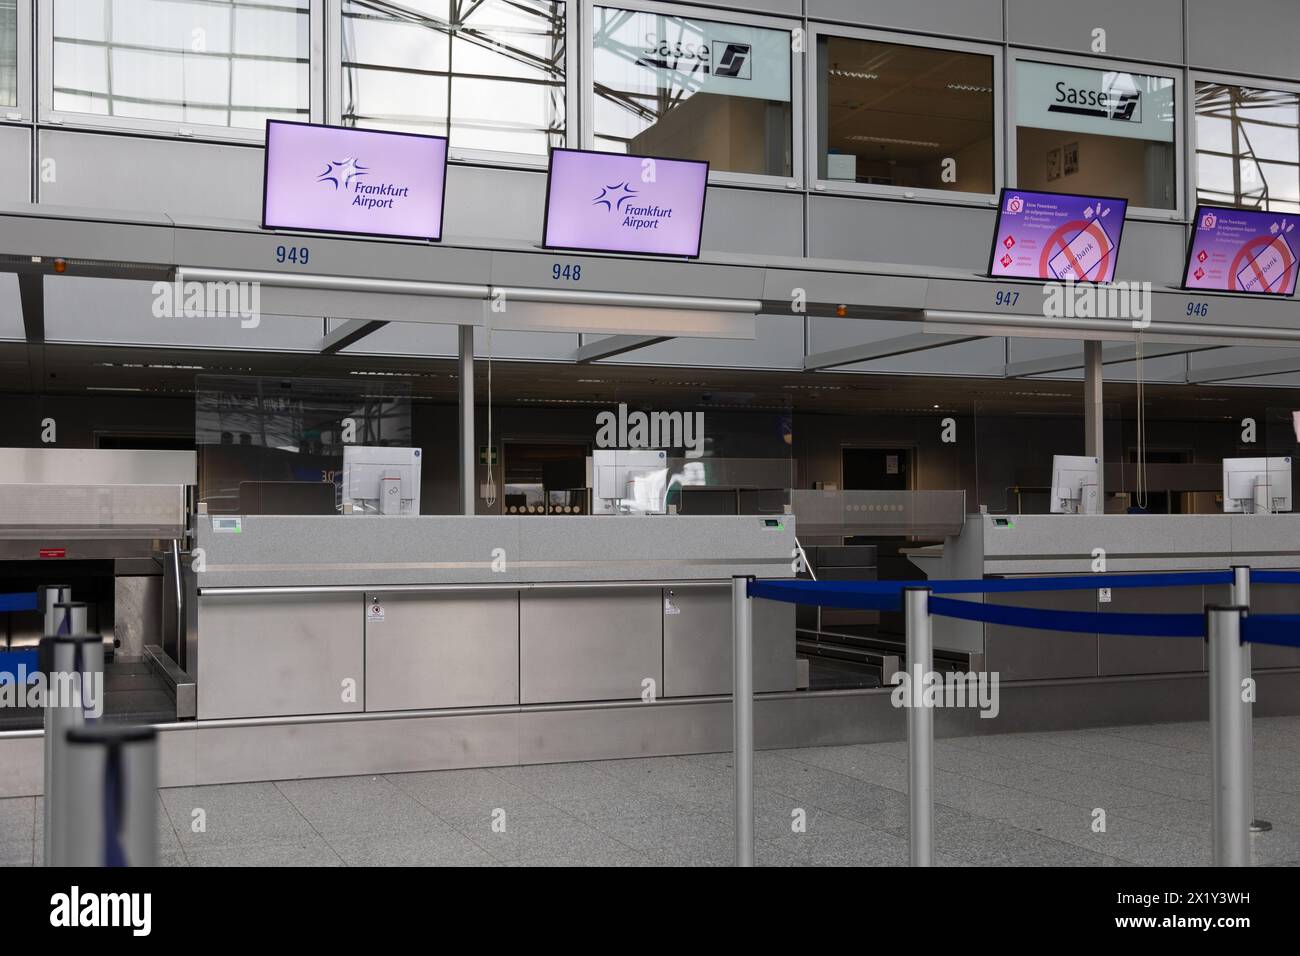 Aeroporto internazionale di Francoforte, Germania - 19 febbraio 2024: Display con l'annuncio dell'aeroporto di Francoforte appesi al di sopra del conteggio dei check-in vuoti Foto Stock